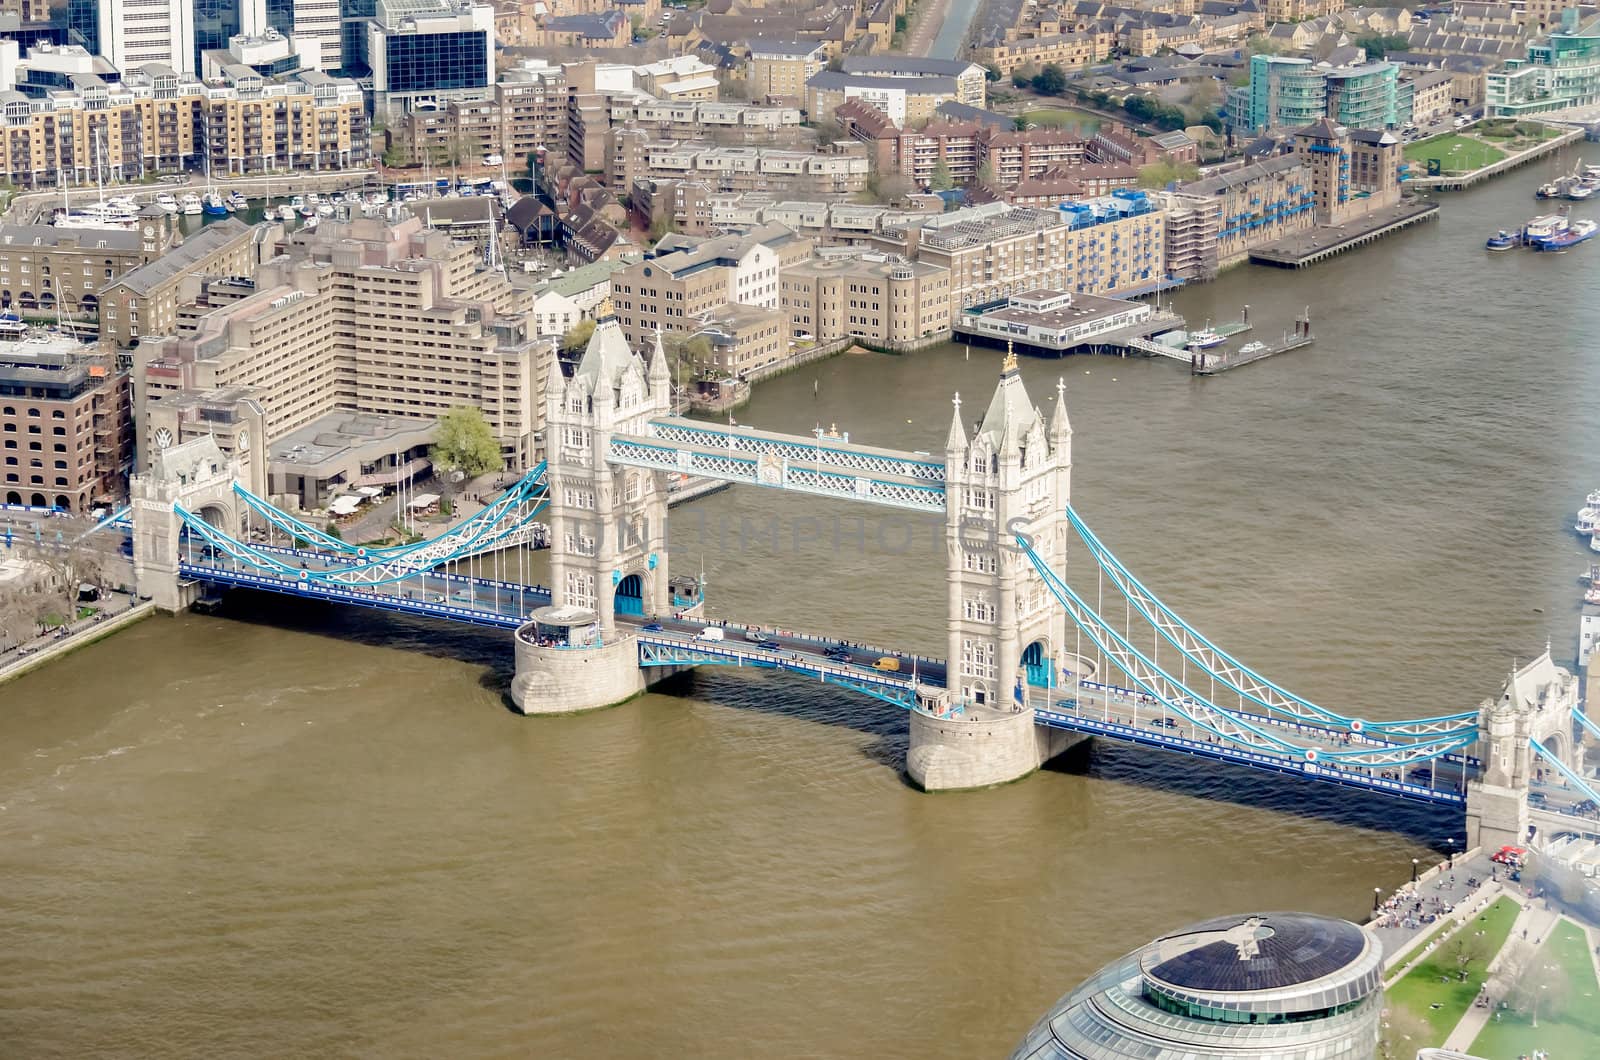 Tower Bridge, Historical Landmark in London, UK